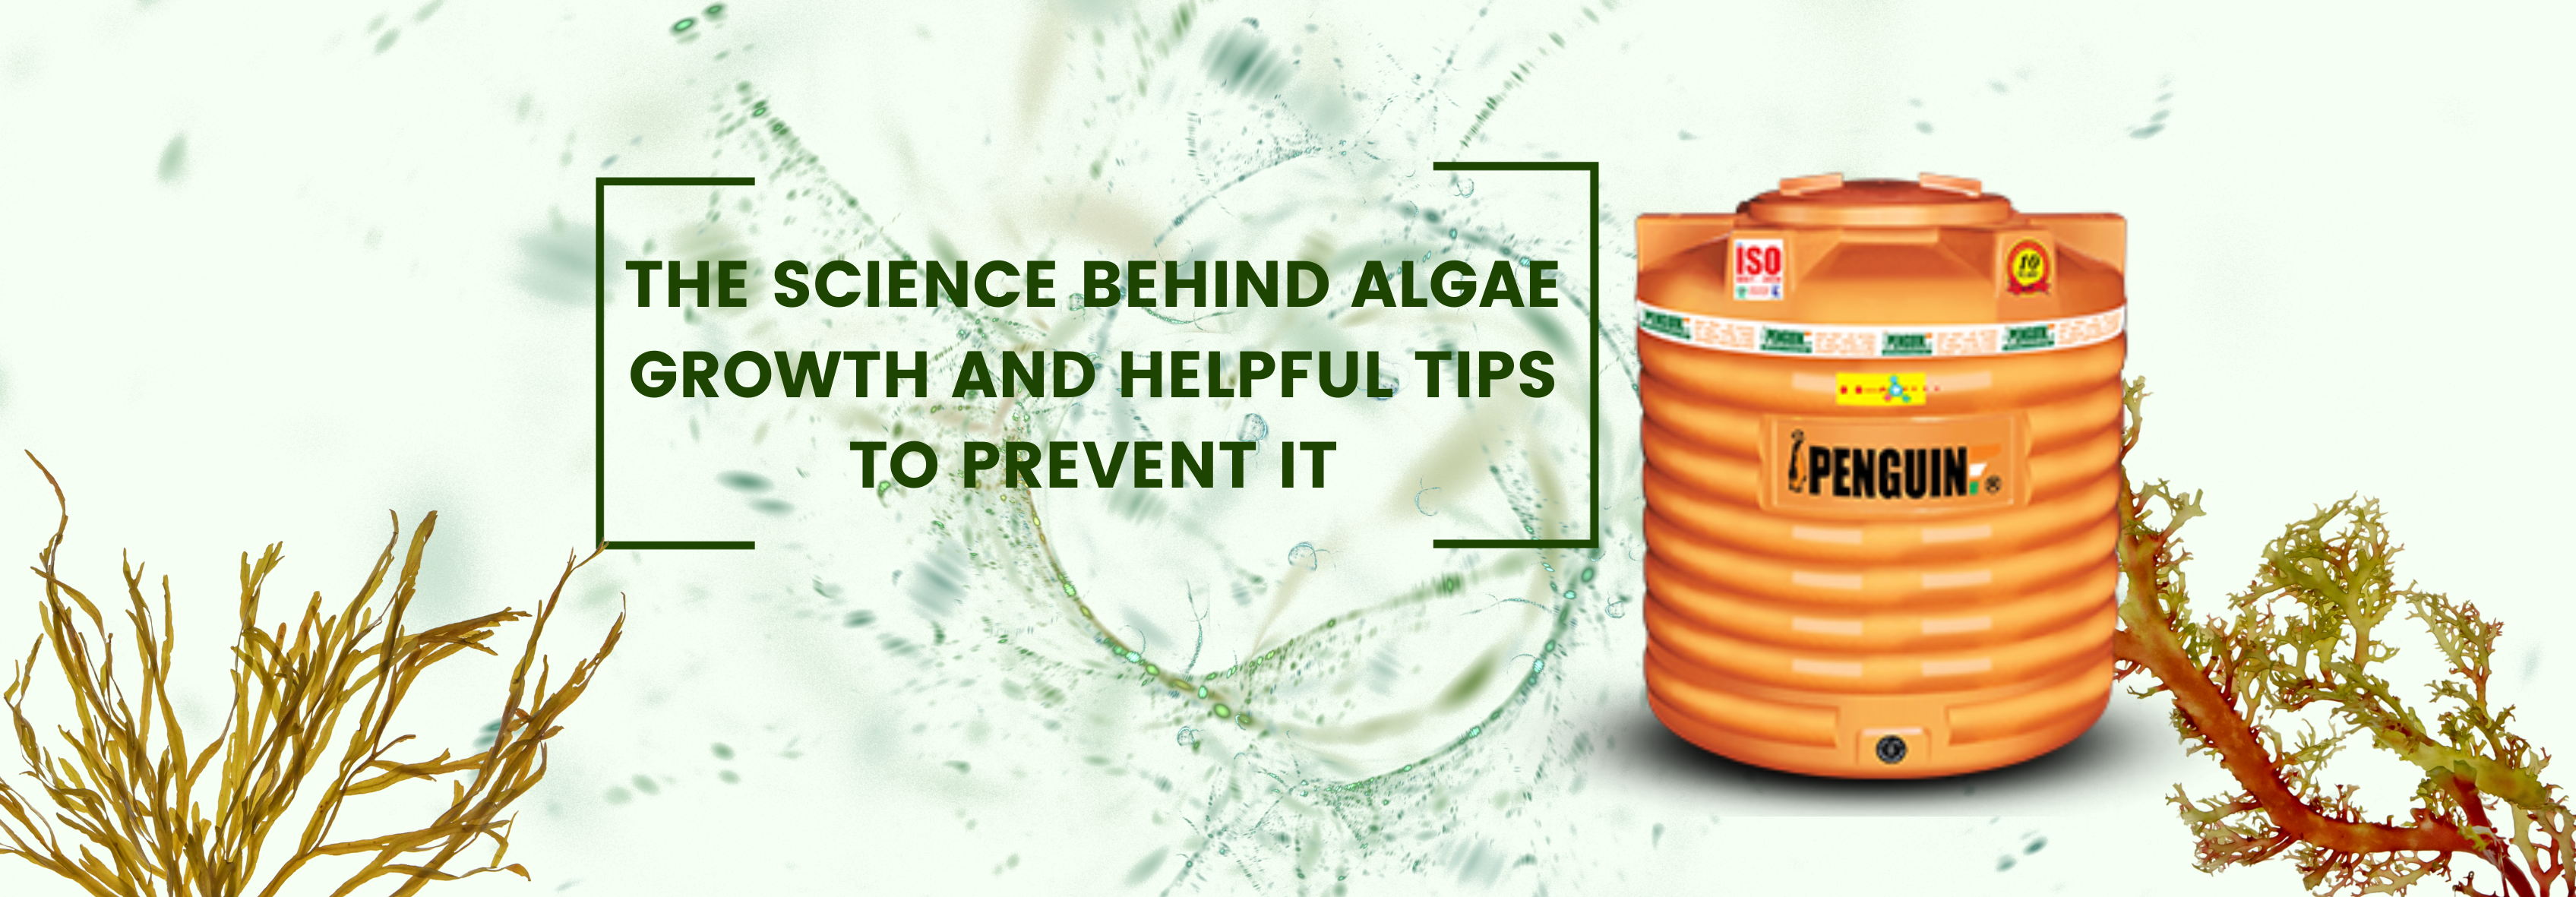 science behind algae growth